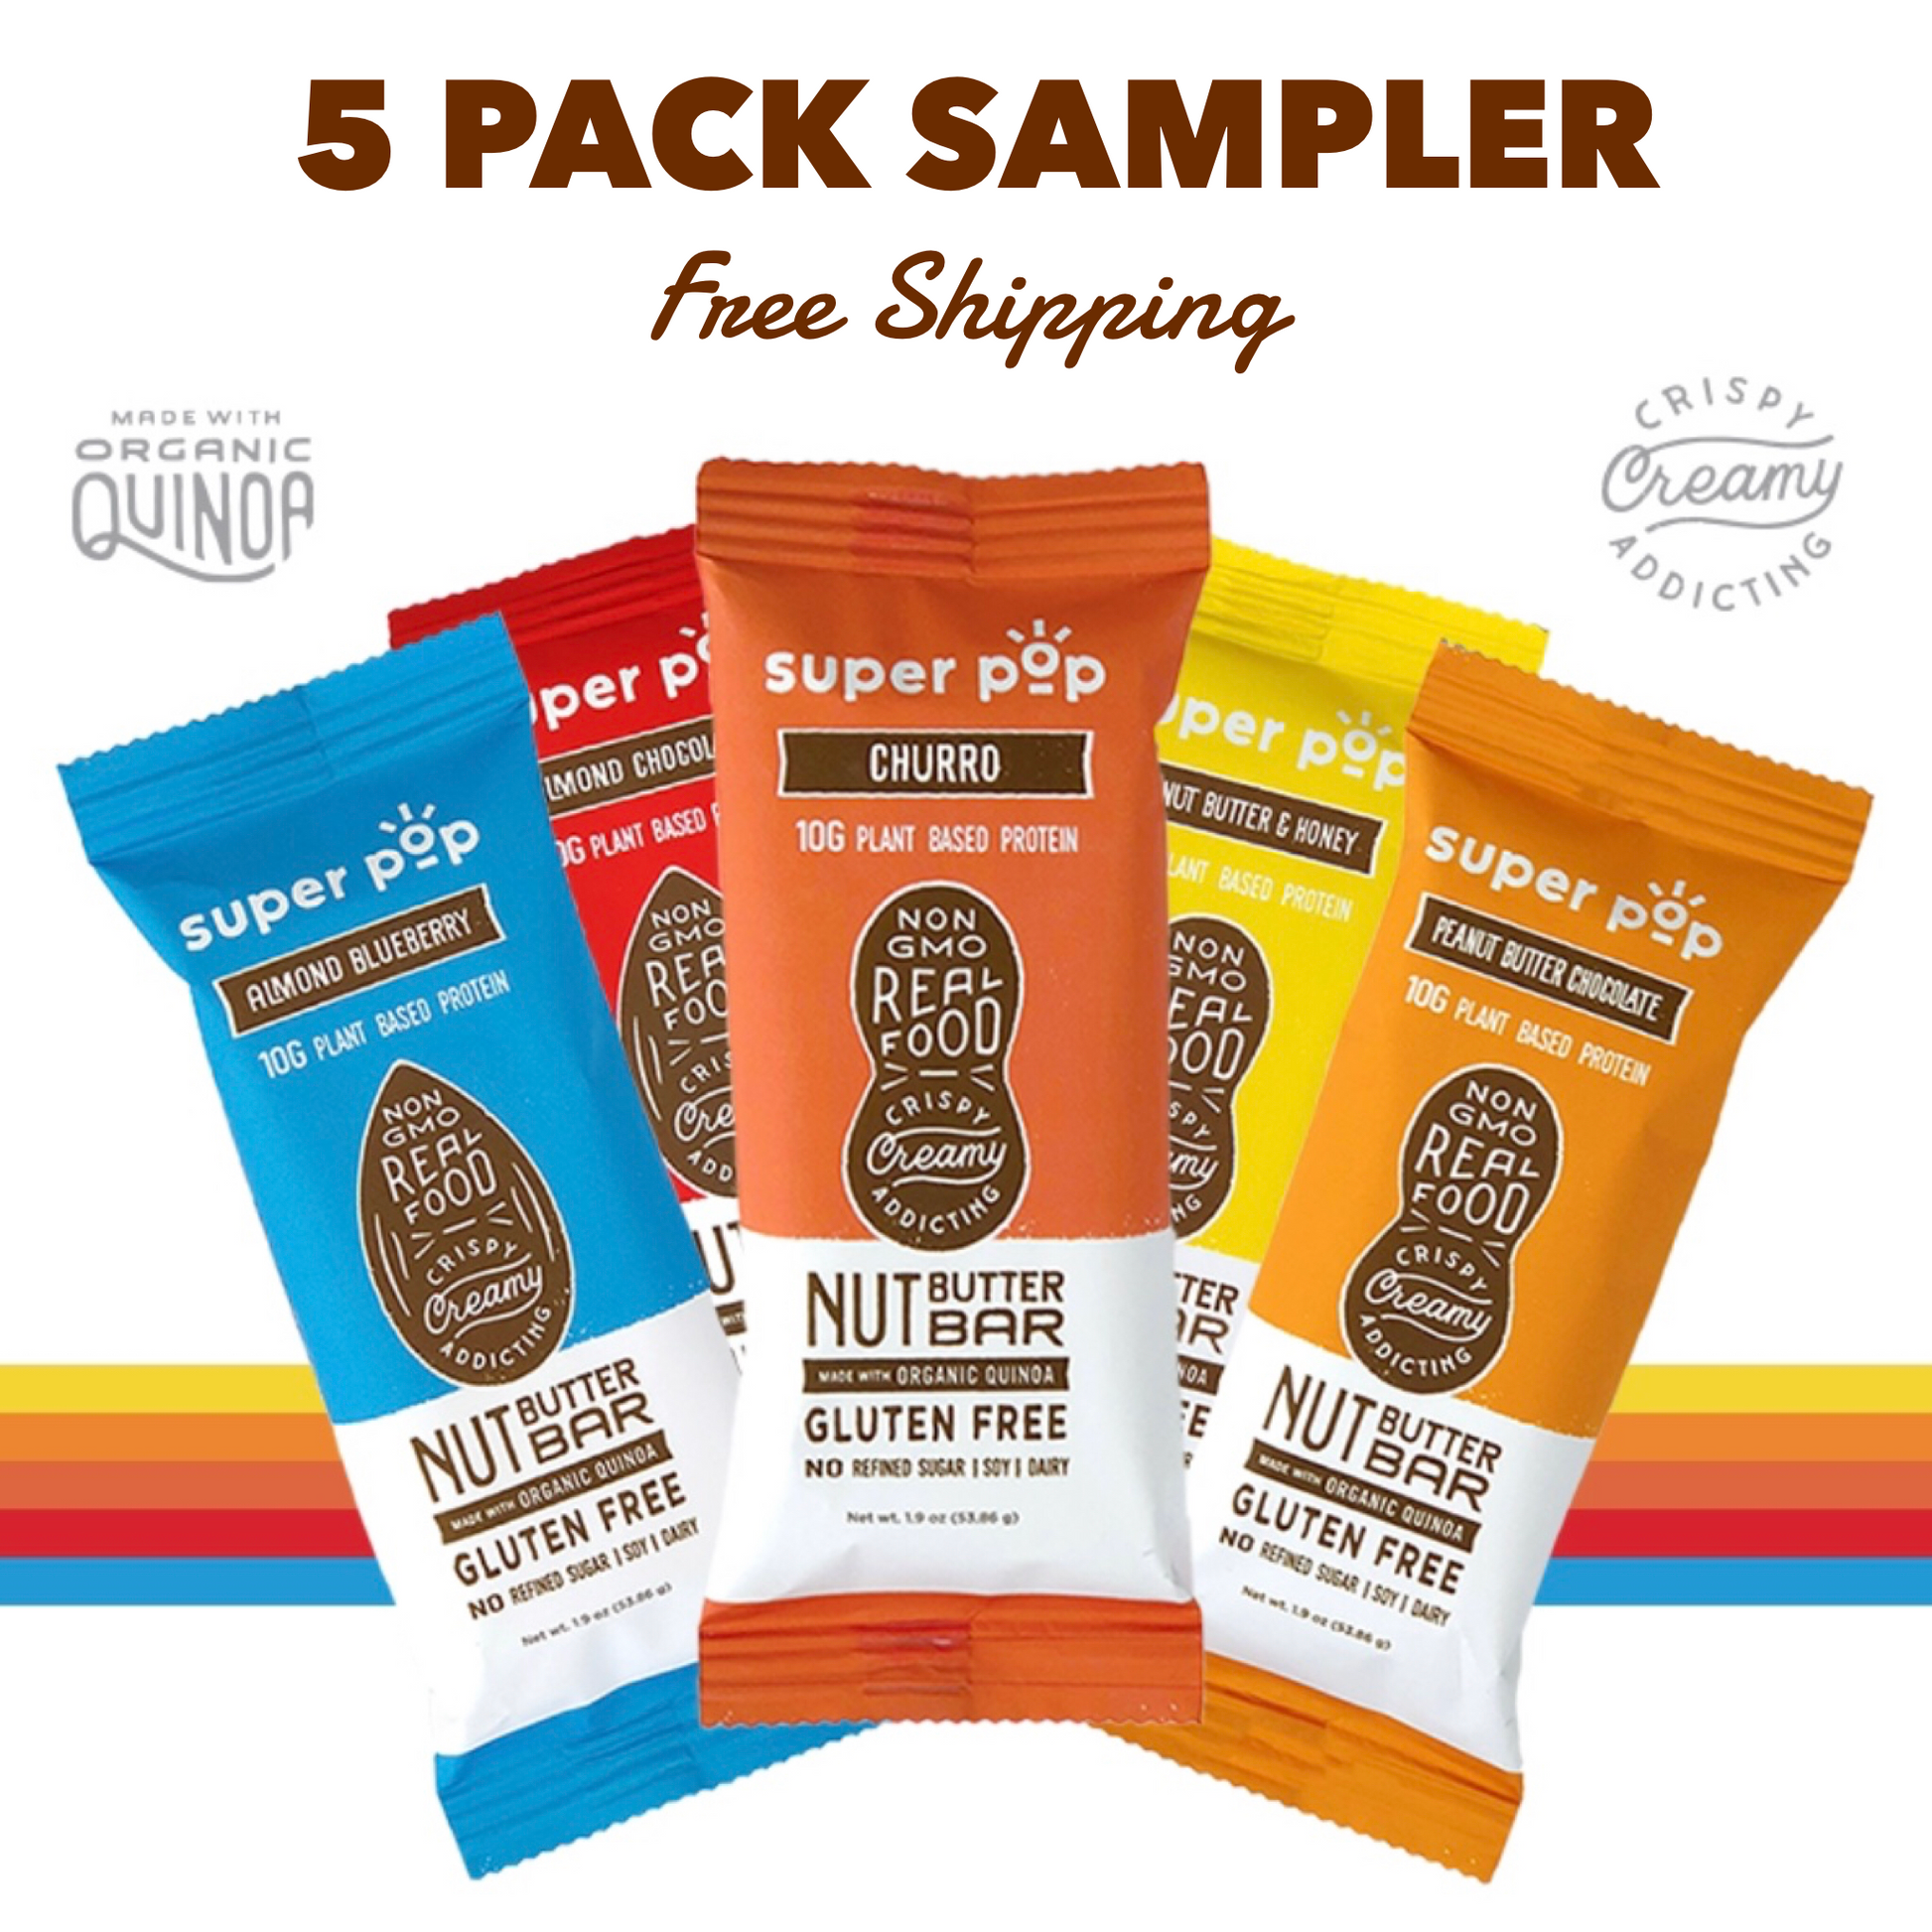 Free snack sample packs